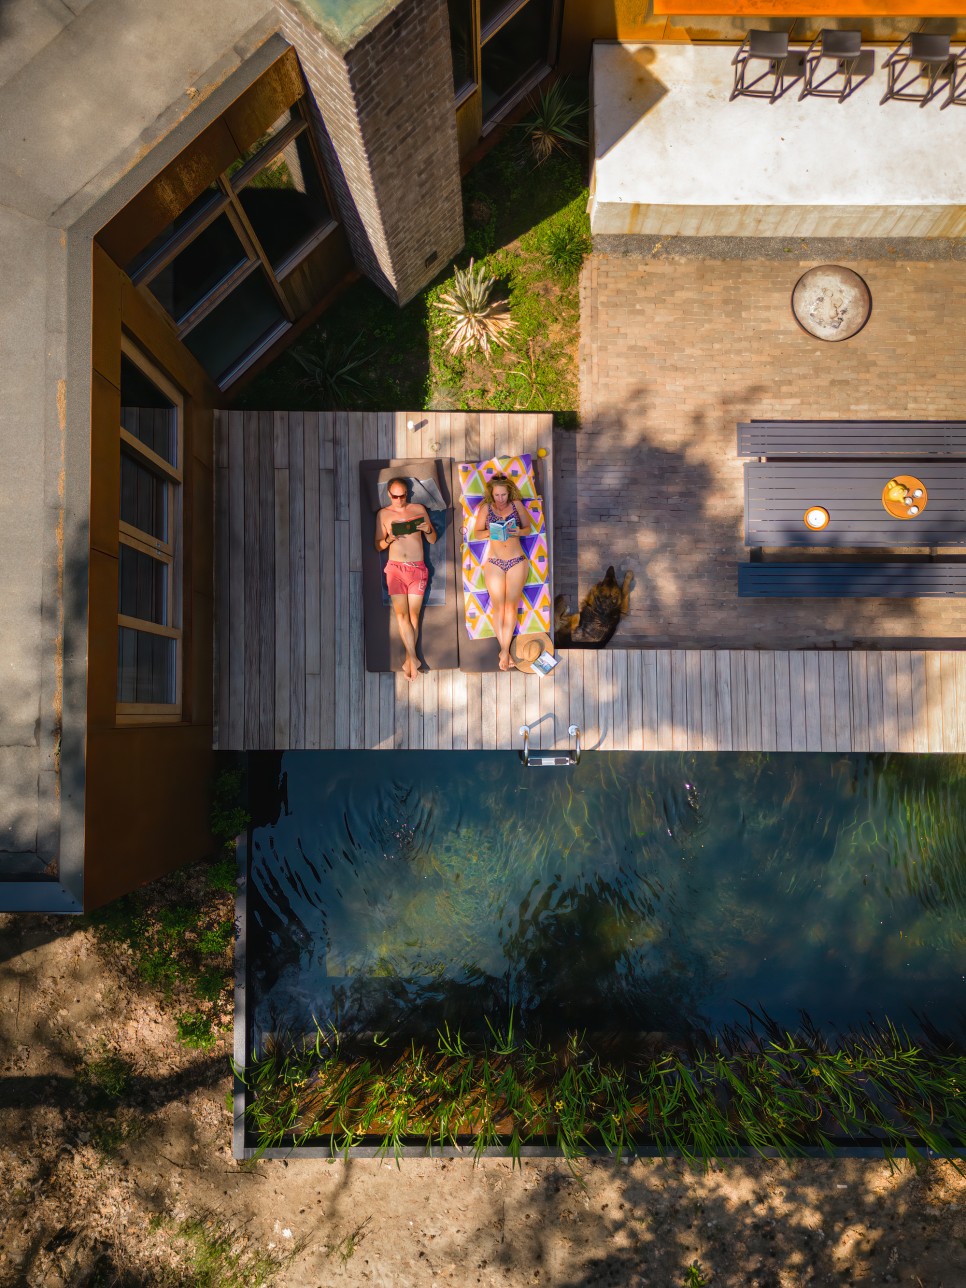 숲속의 집! 아늑하고 편안한 C-자 평면의 코르텐 하우스, C House by GetAway Projects